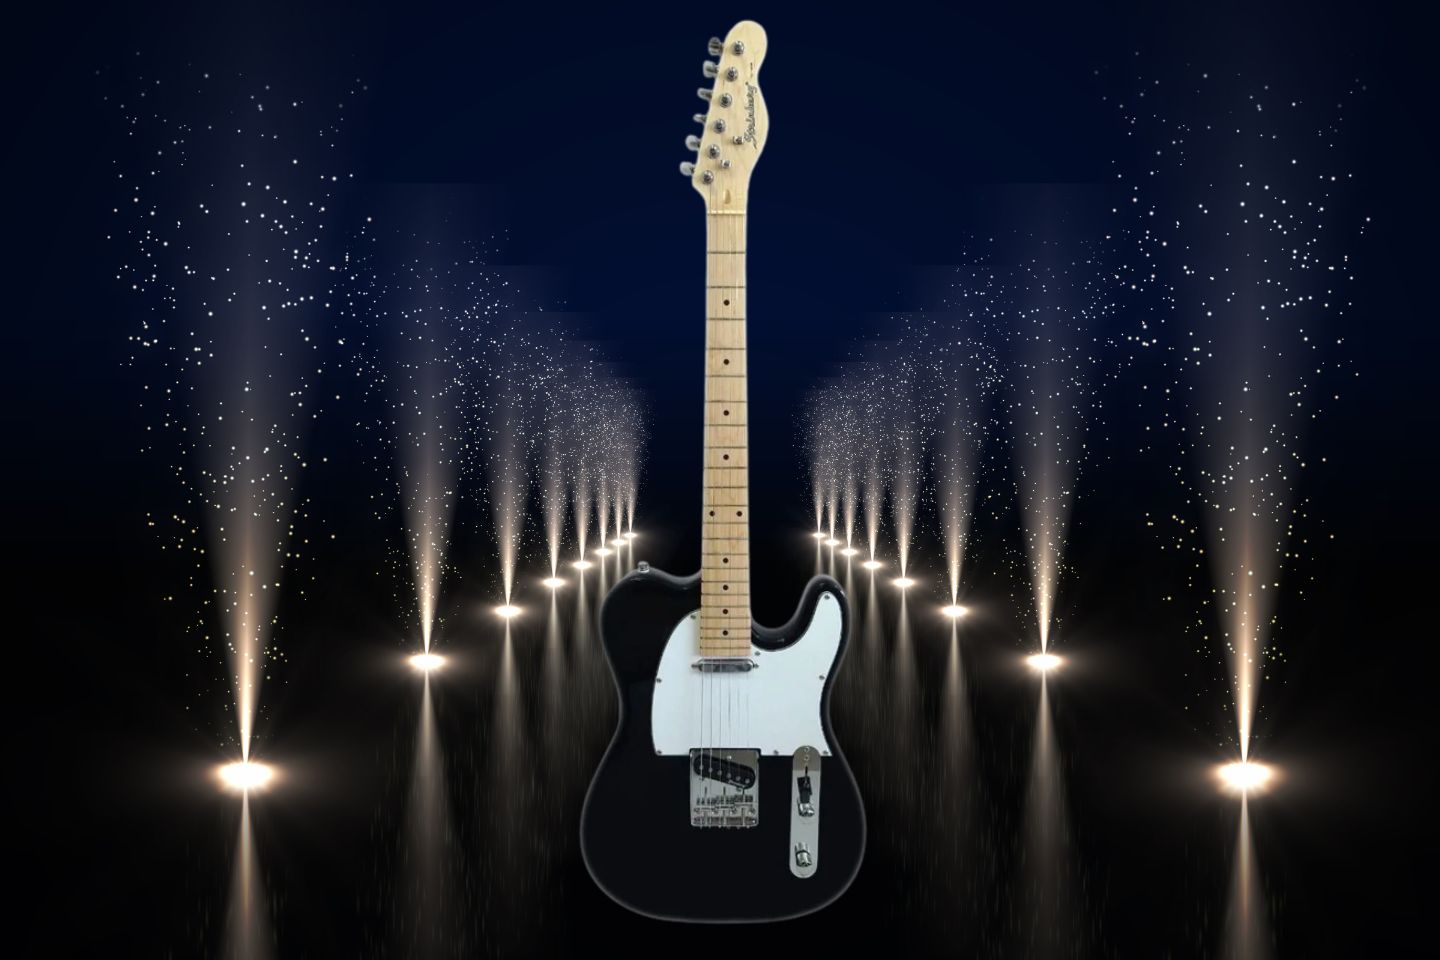 Guitarra elétrica Strinberg TC120S de choupo black verniz brilhante com diapasão de bordo